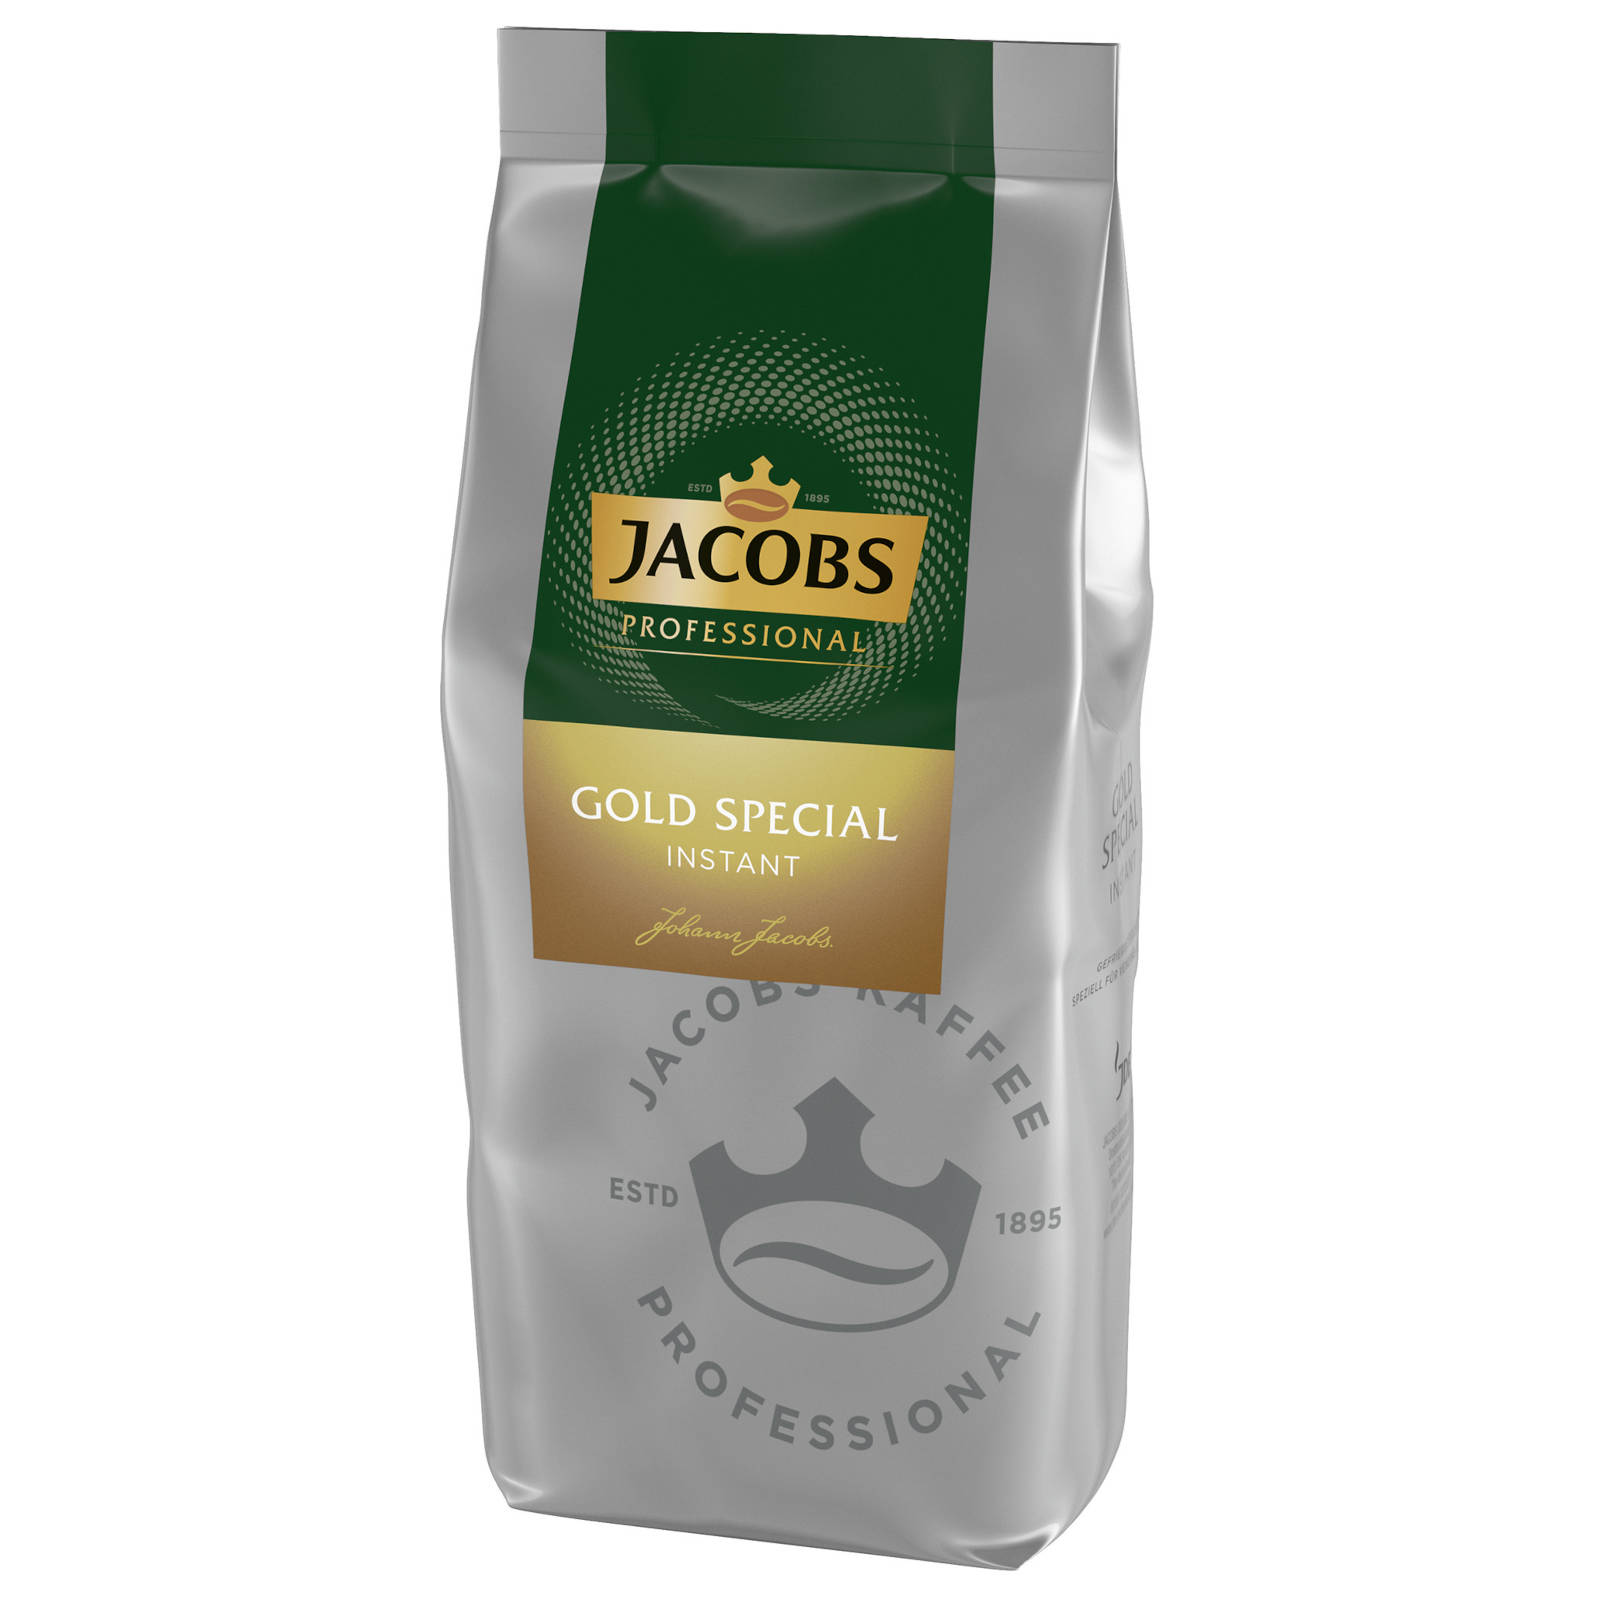 auflösen) Instantkaffee JACOBS Special (In Professional Wasser heißem Gold g 8x500